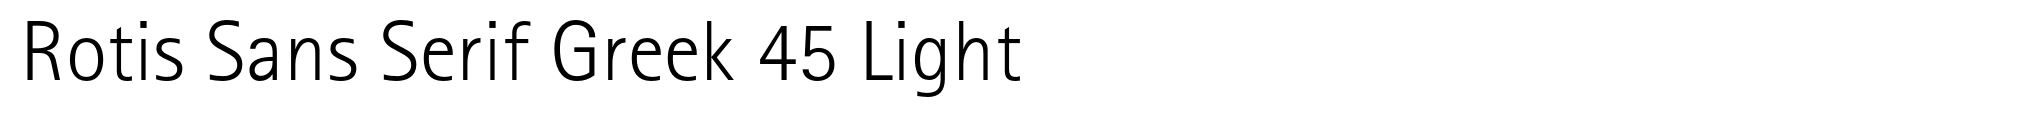 Rotis Sans Serif Greek 45 Light image